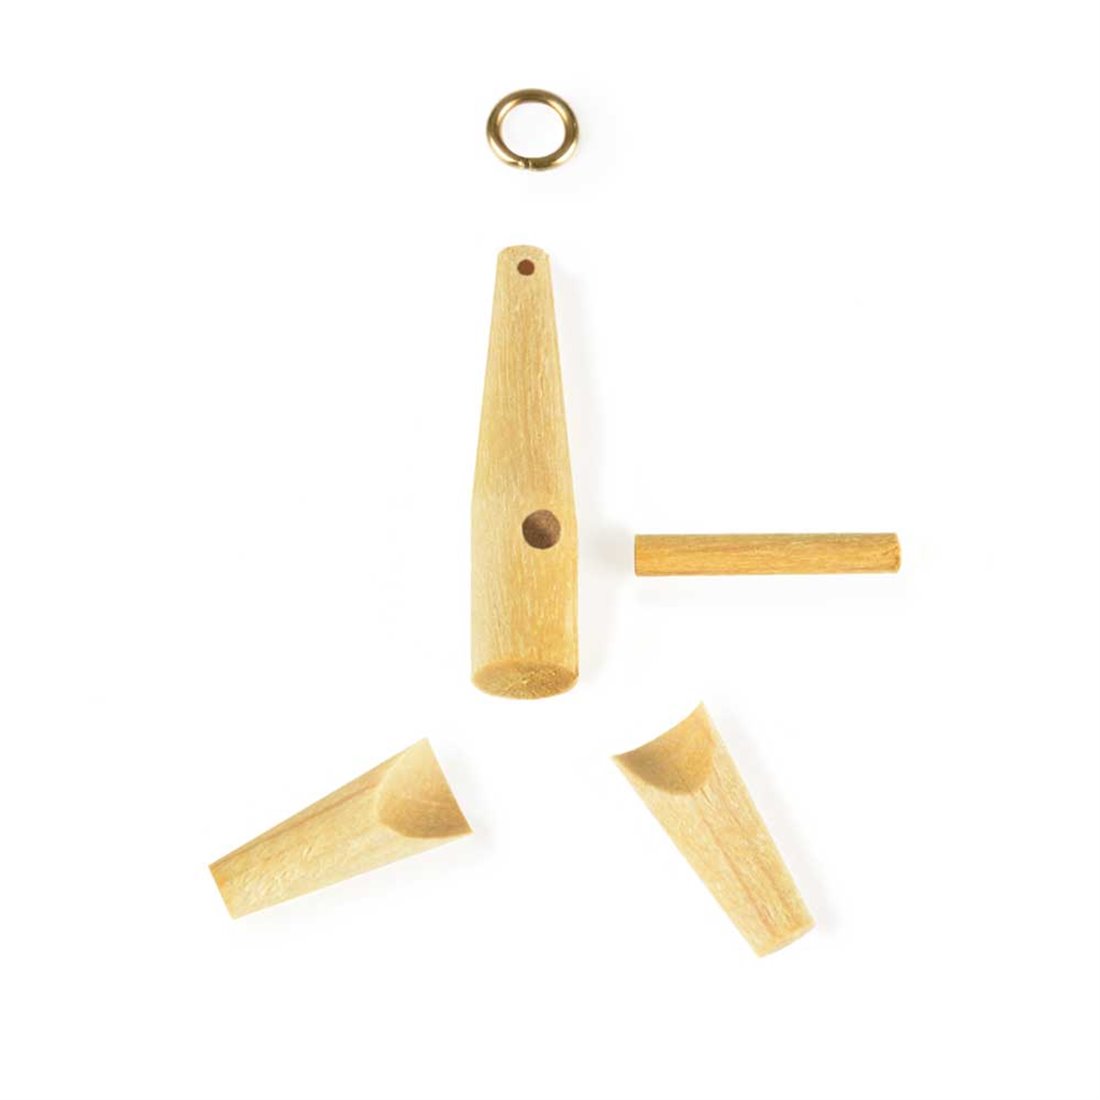 Amati Model - Anclajes de madera mm.22 - Pequeñas piezas y accesorios